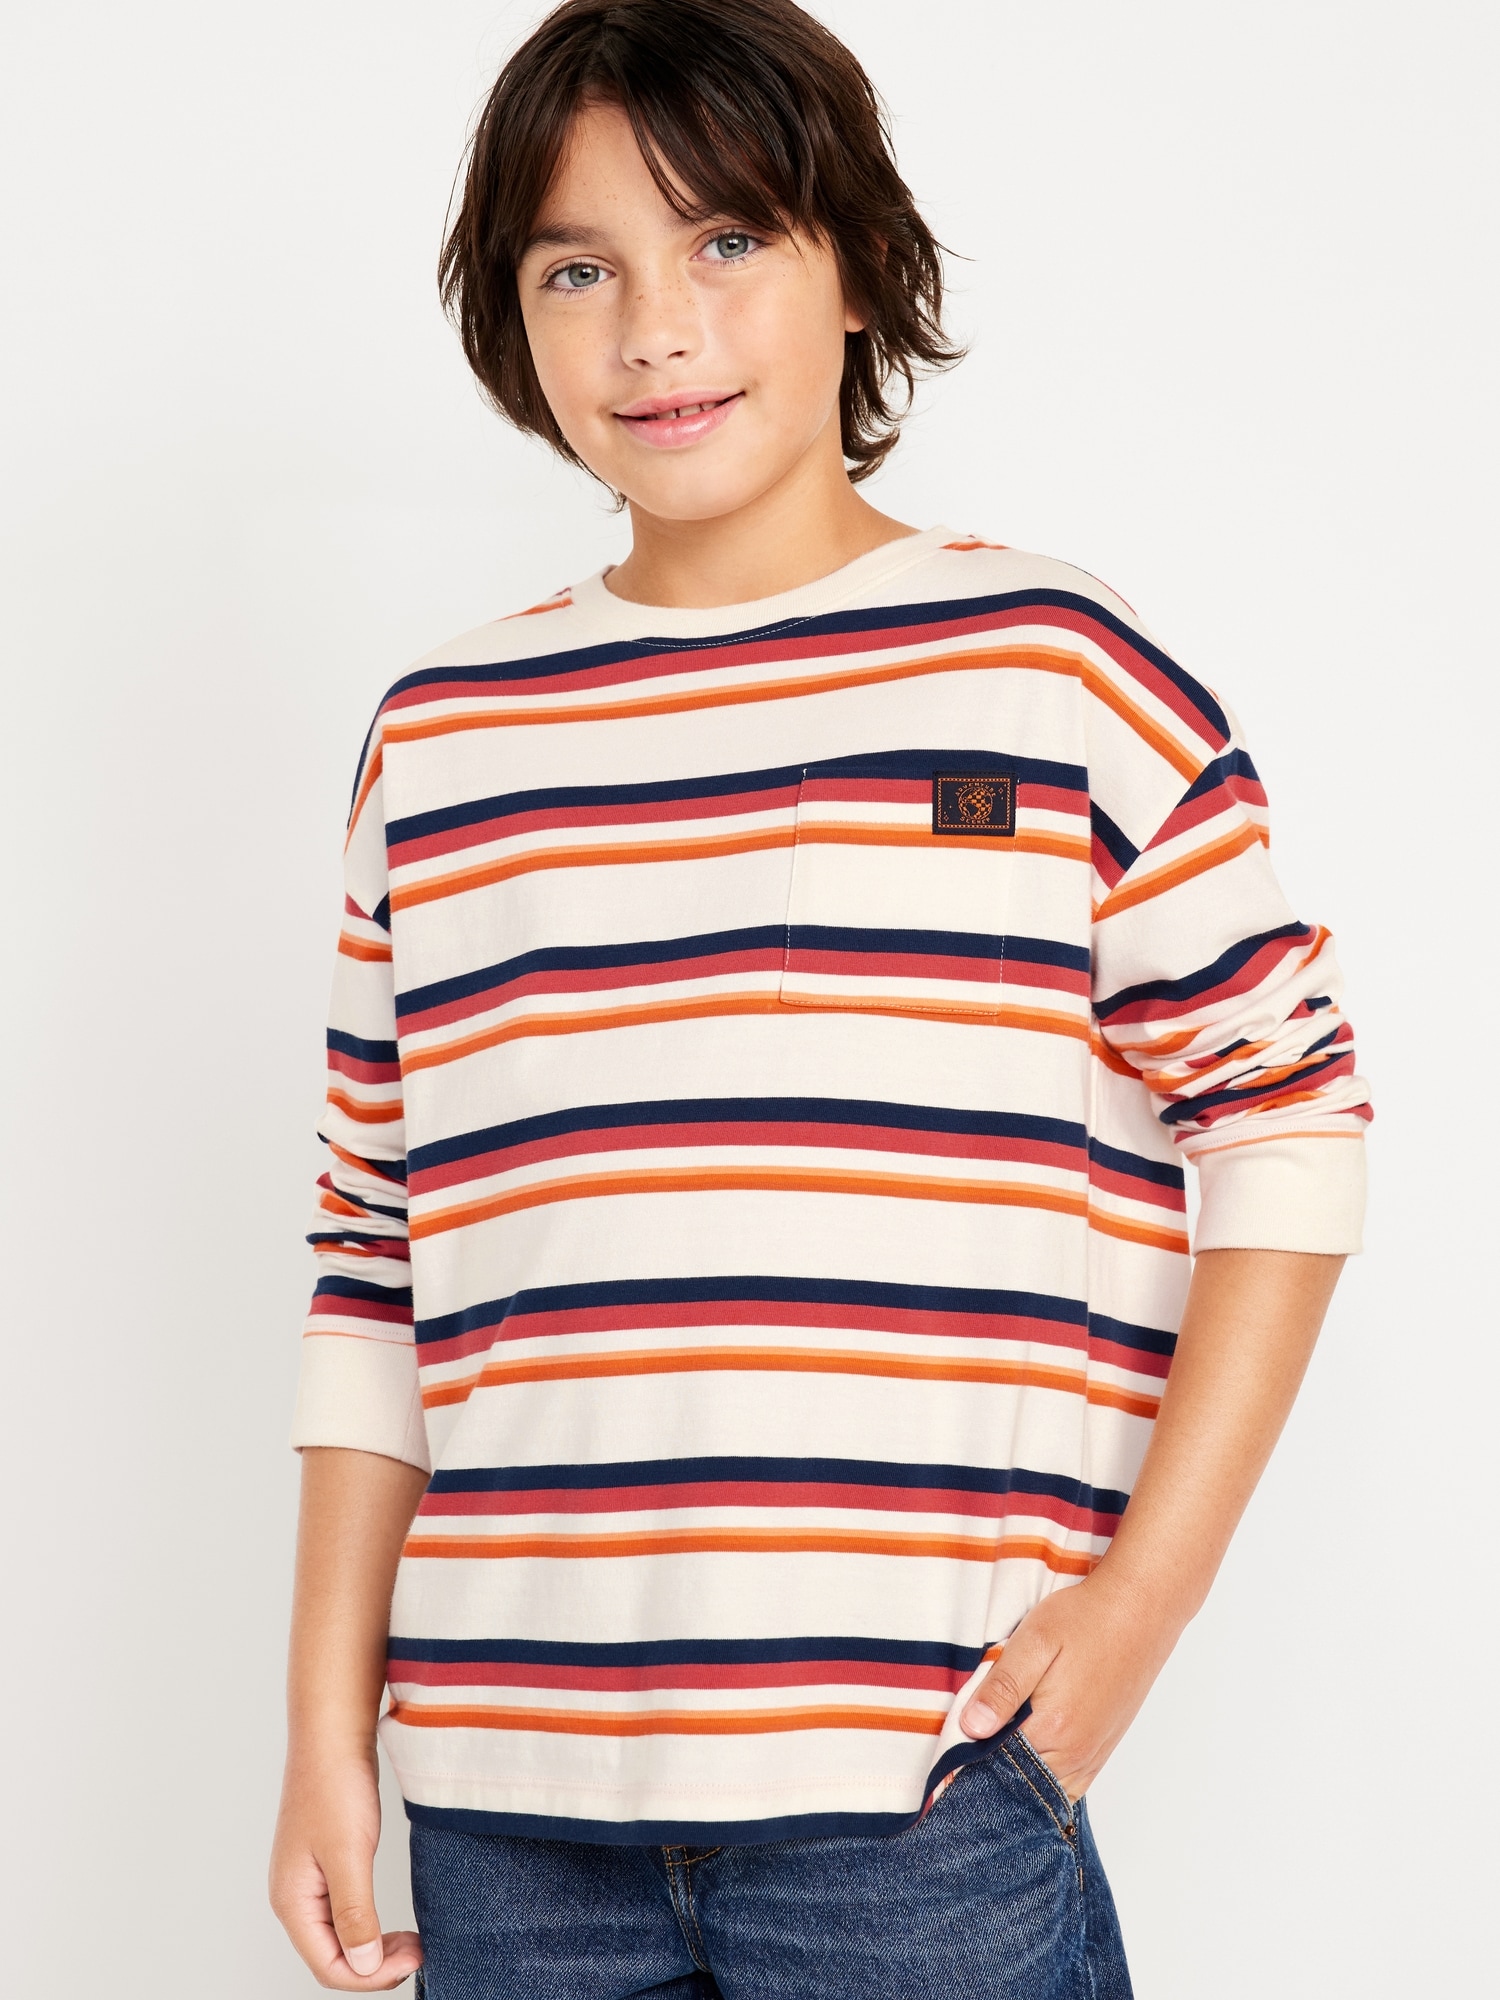 Oversized Long-Sleeve Pocket T-Shirt for Boys